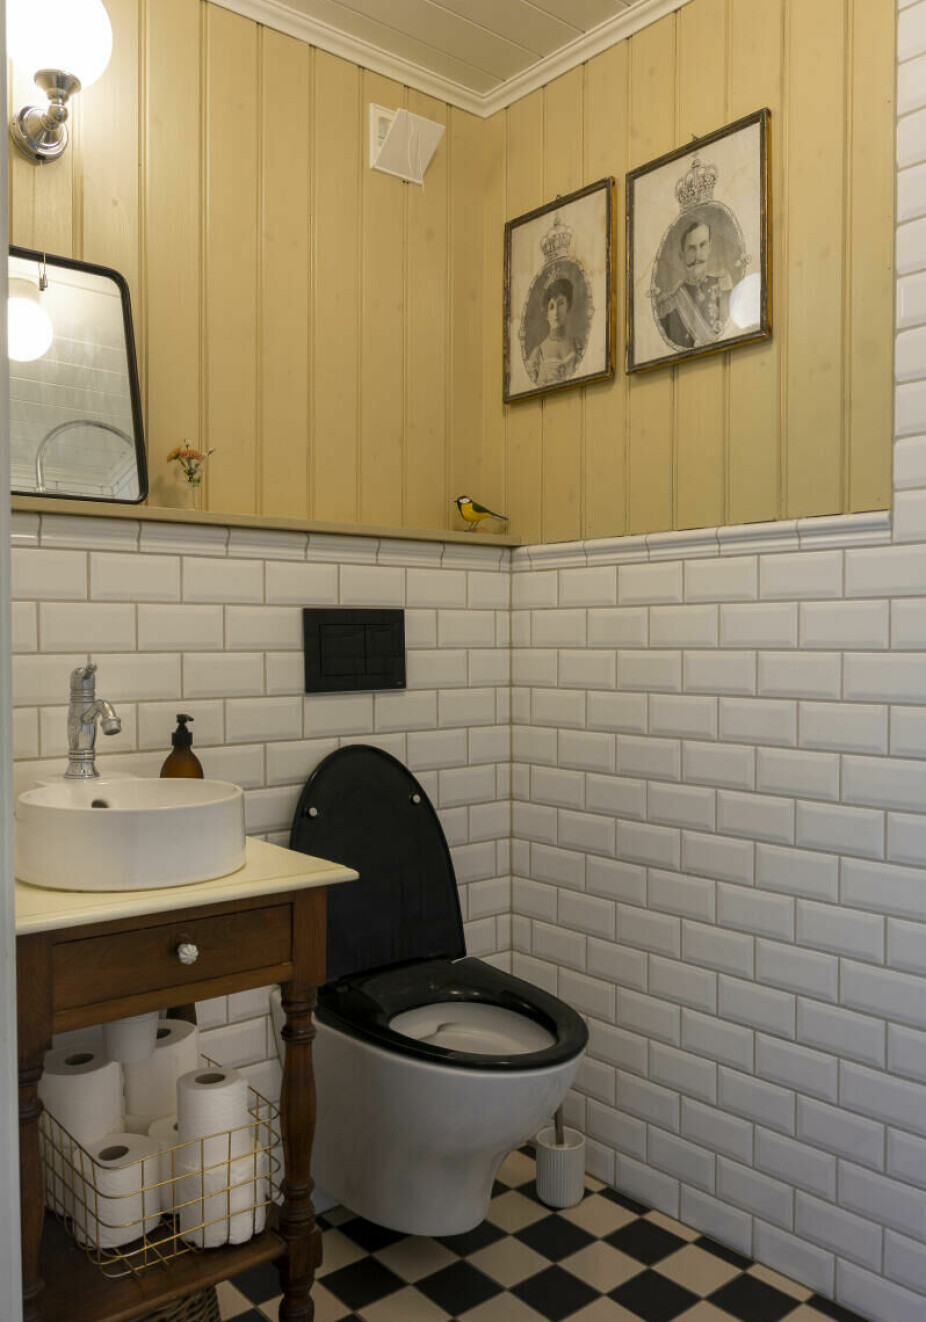 GJESTEBAD: Gjestebadet er bygget opp helt fra grunnen av, og er holdt i gammel stil ala århundreskiftet. Her er det brukt tidsriktige fliser og armaturer. Panelet er malt i Ottosons linojefärg, vetegrå. Et gammelt nattbord fungerer fint som understell til en søt liten vask. Til høyre finnes en dusj.